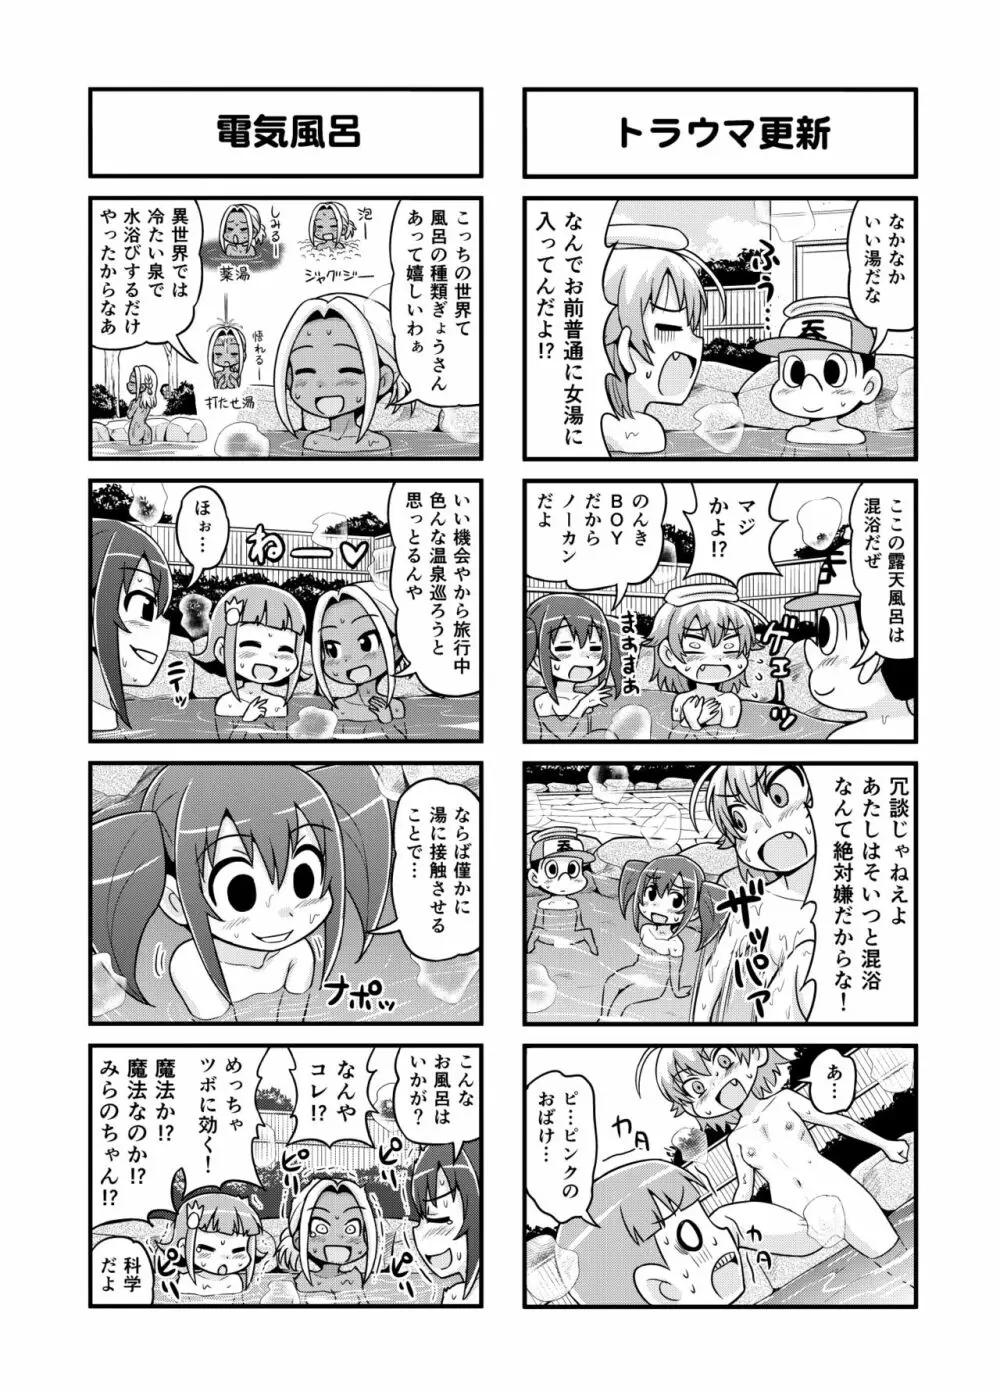 のんきBOY 1-39 138ページ